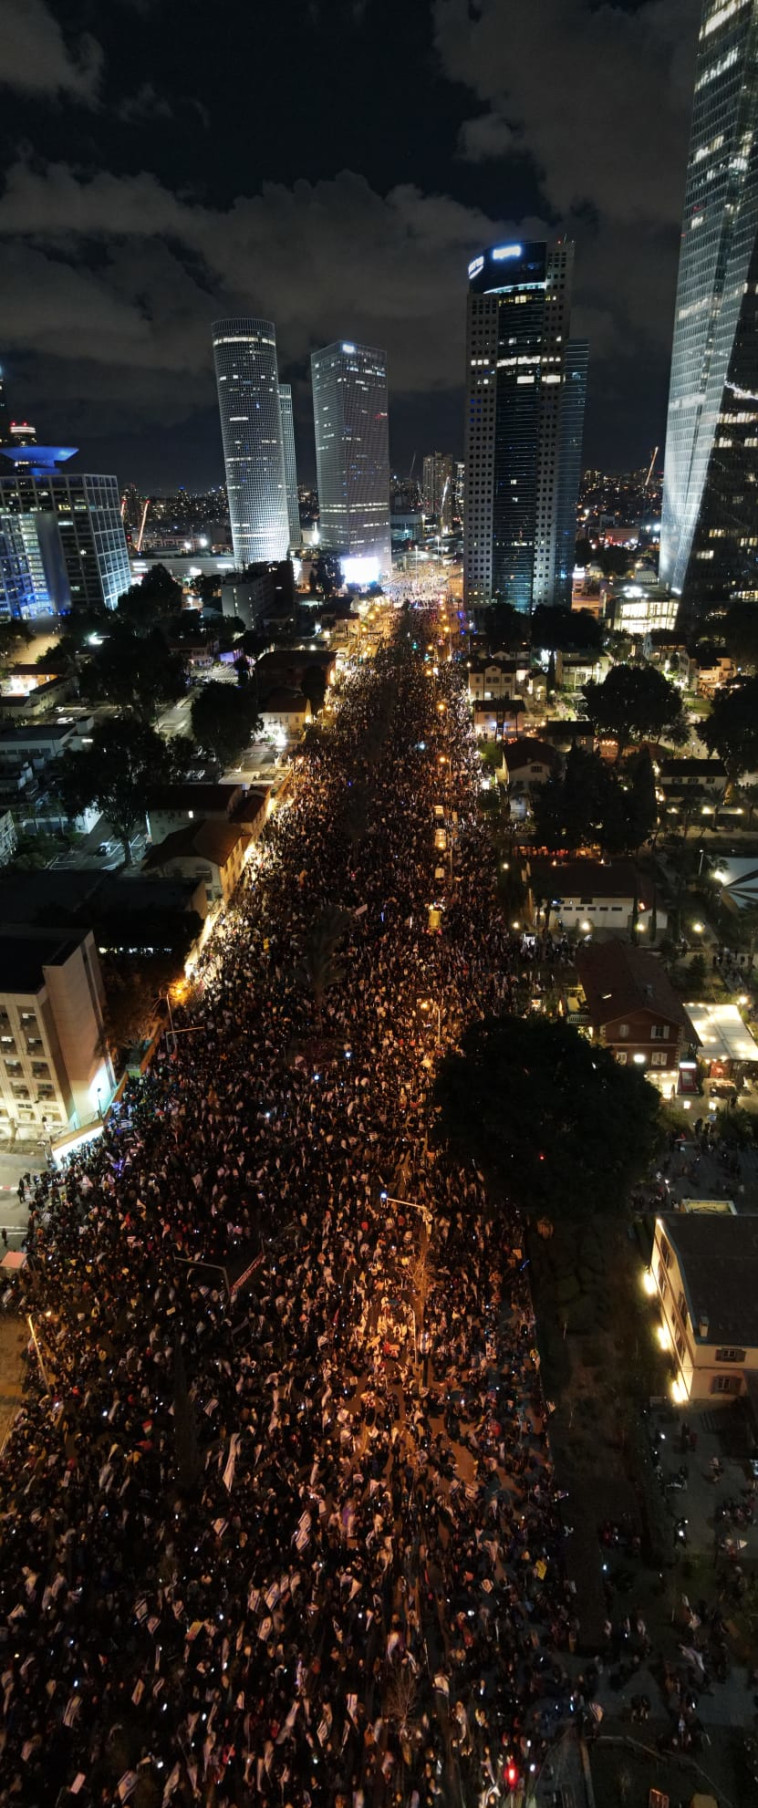 מאה אלף איש הפגינו נגד הרפורמה המשפטית ברחוב קפלן בתל אביב  (צילום: יאיר פלטי)